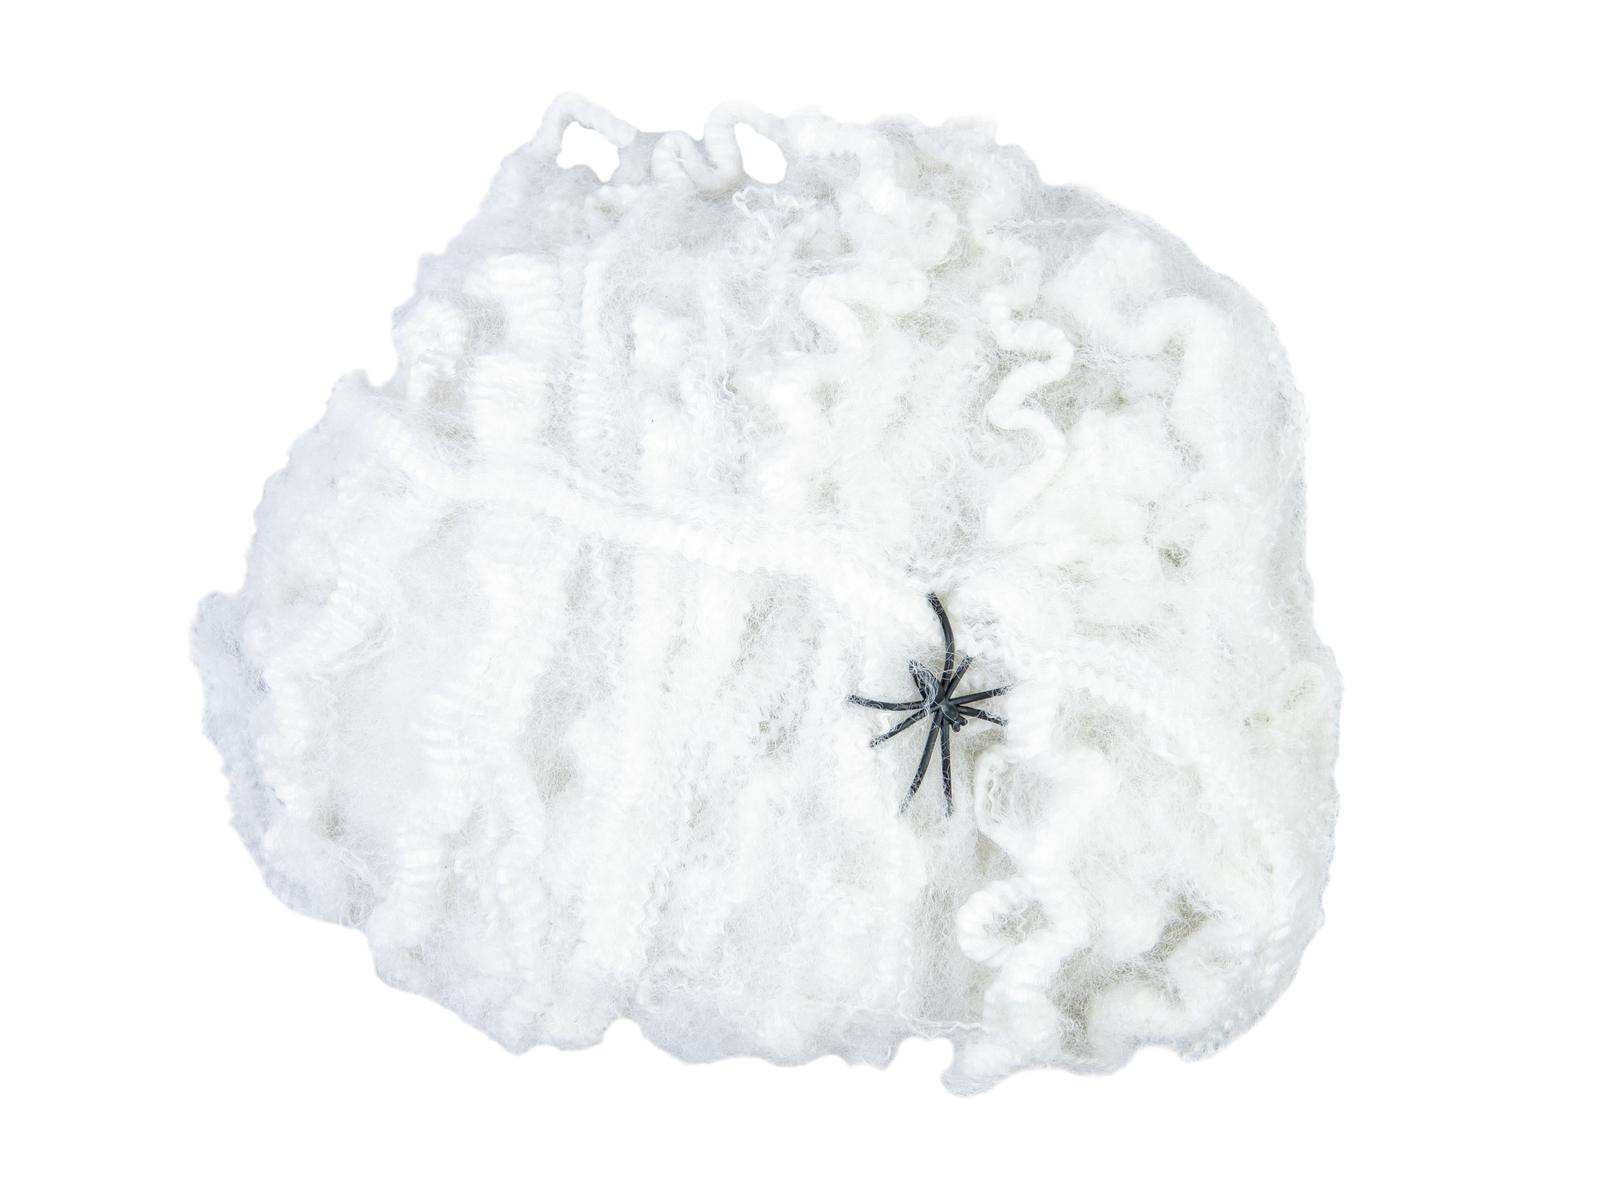 Spinnennetz synthetisch, weiss, 50g Packung - Gruseldekoration + 2 Kunststoffspinnen